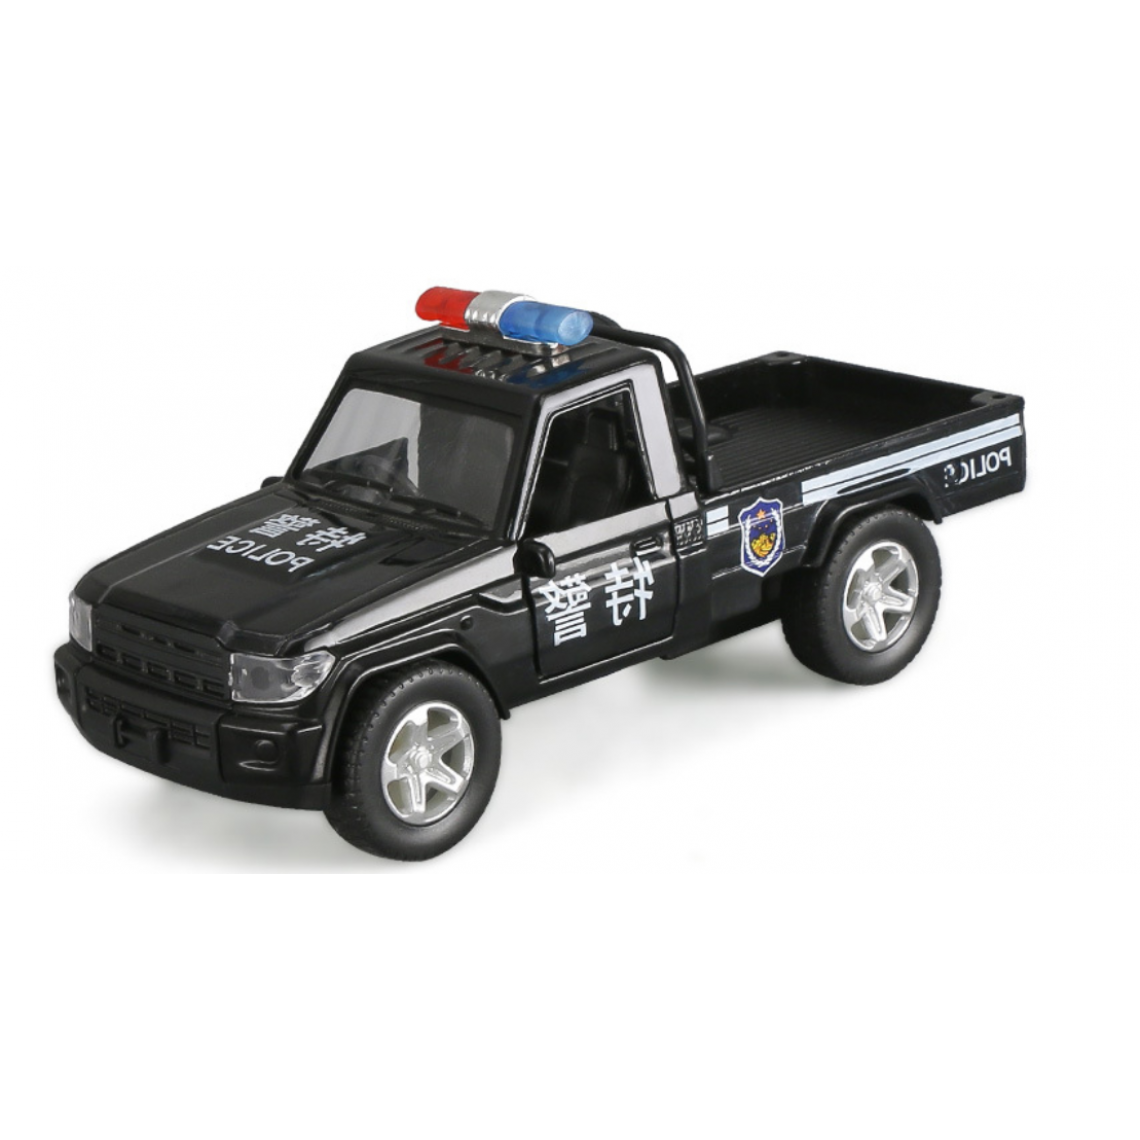 Universal - Police, incendie, pick-up, modèle de camion, son, lumière, voiture jouet, garçon, enfant.(Le noir) - Voitures